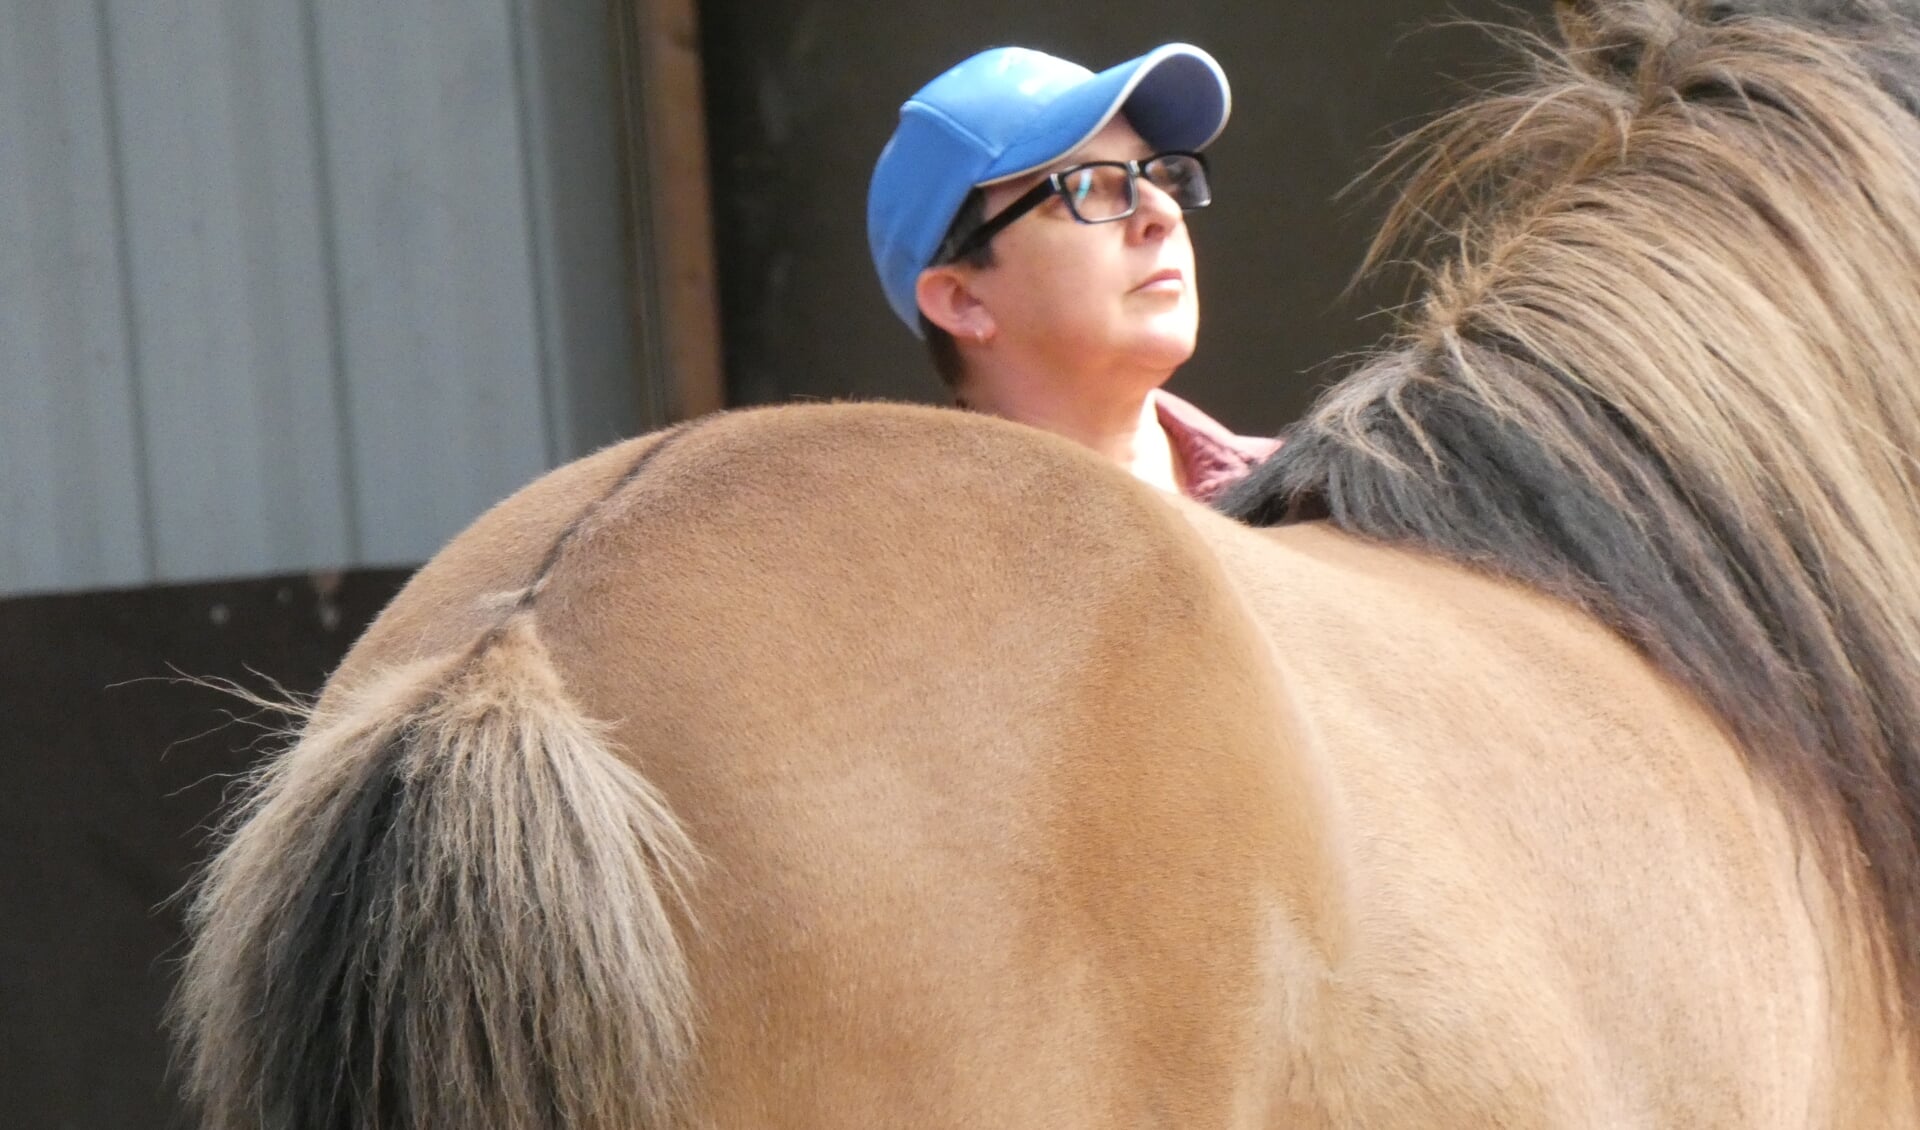 Sharon checkt of de omgeving veilig is, zodat het paard zich veilig kan voelen